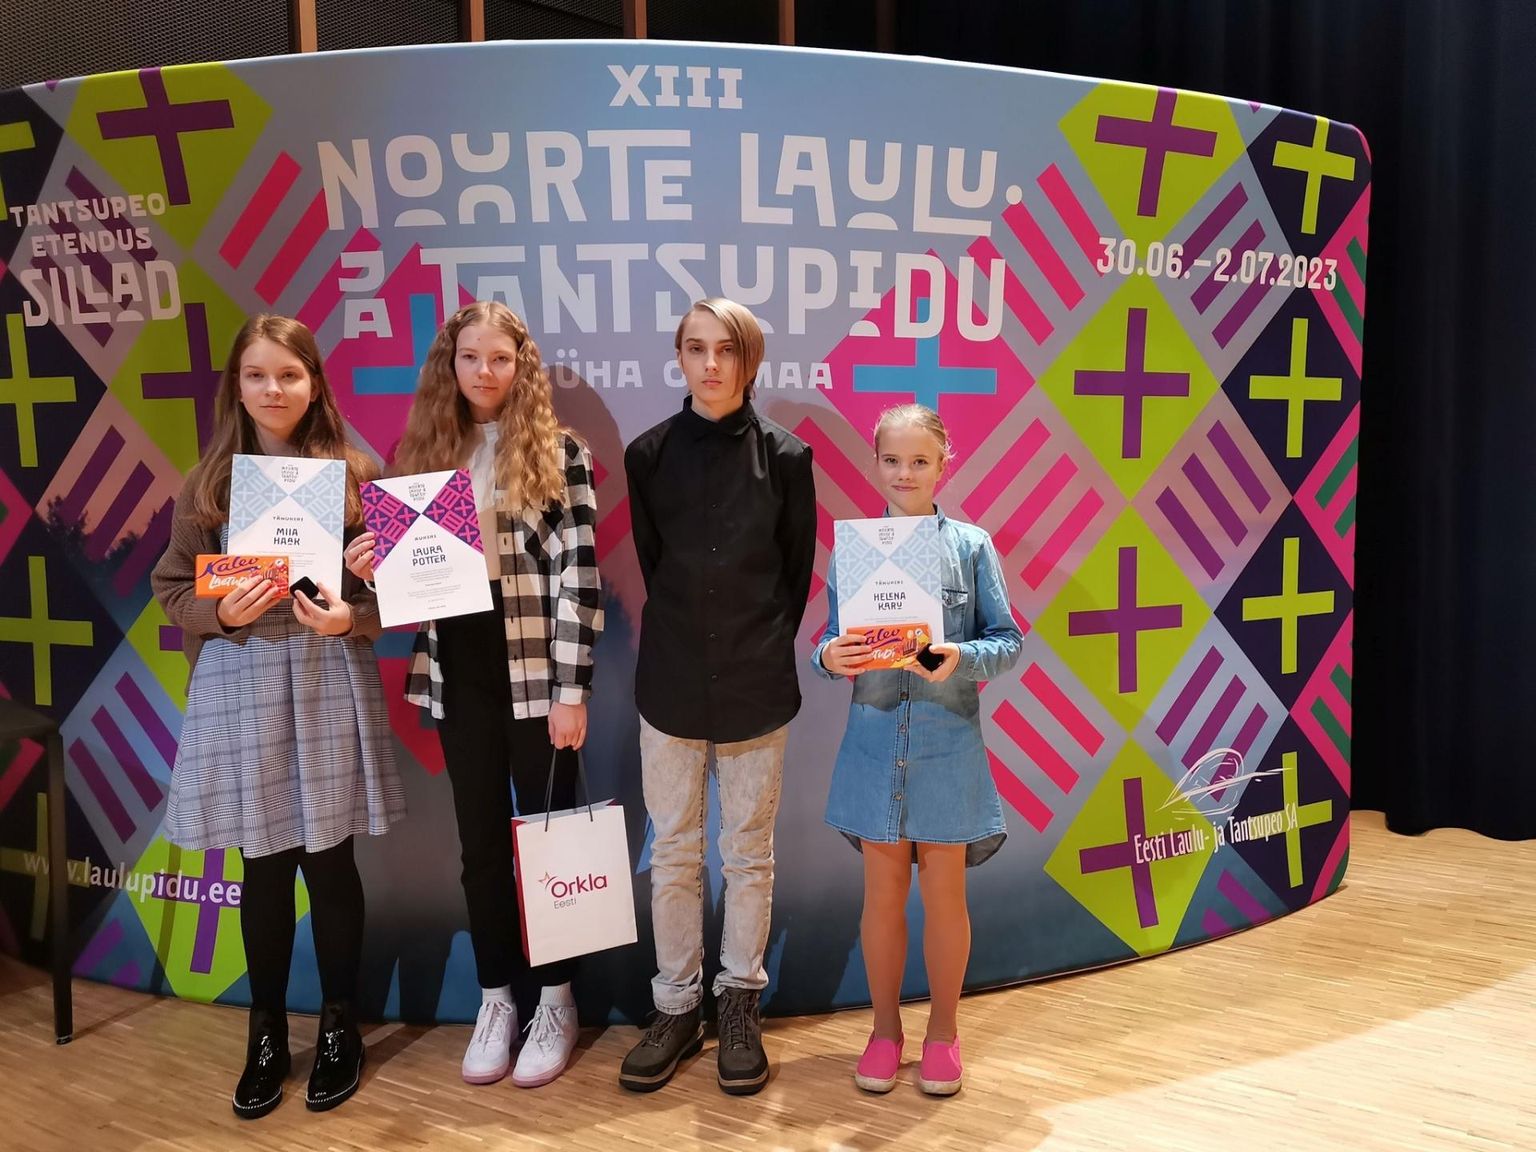 Parksepa kooli õpilastest osalesid võistlusel Miia Haak (vasakult), Laura Potter, Otto Simon Süving, Helena Karu, samuti Braian Tsirk, kes pildilt puudub. Potter ja Süving jõudsid 30 parema sekka.